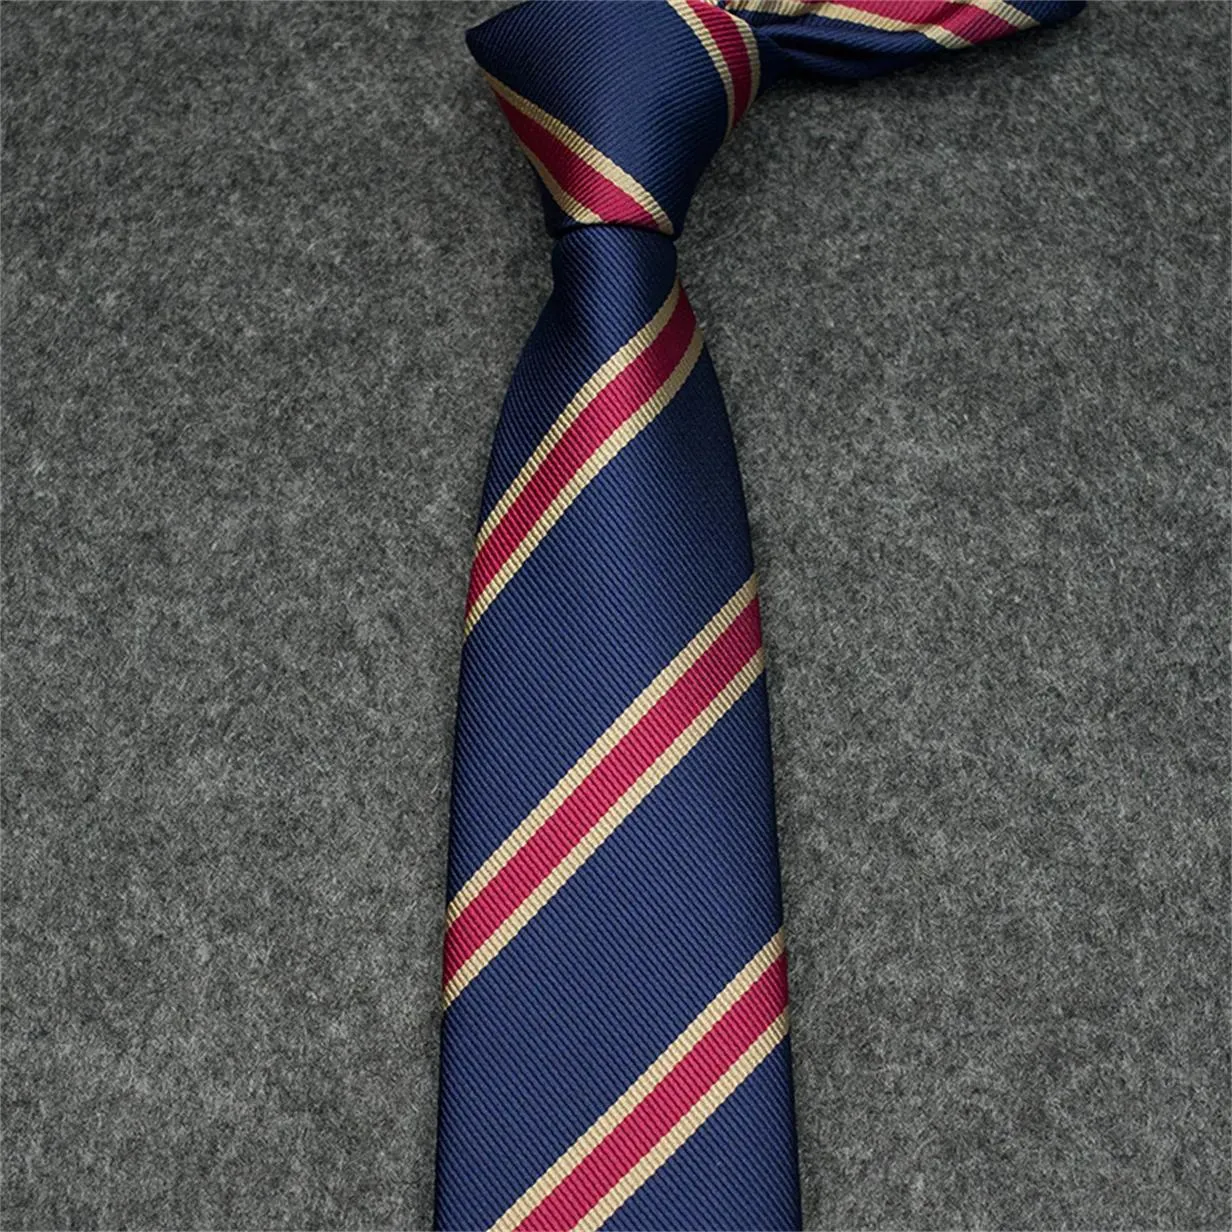 Cravatte Cravatte Nuove Cravatte moda Cravatta di seta 100% Cravatta di design Jacquard Cravatta classica intrecciata a mano per uomo Matrimonio Casual e Busin